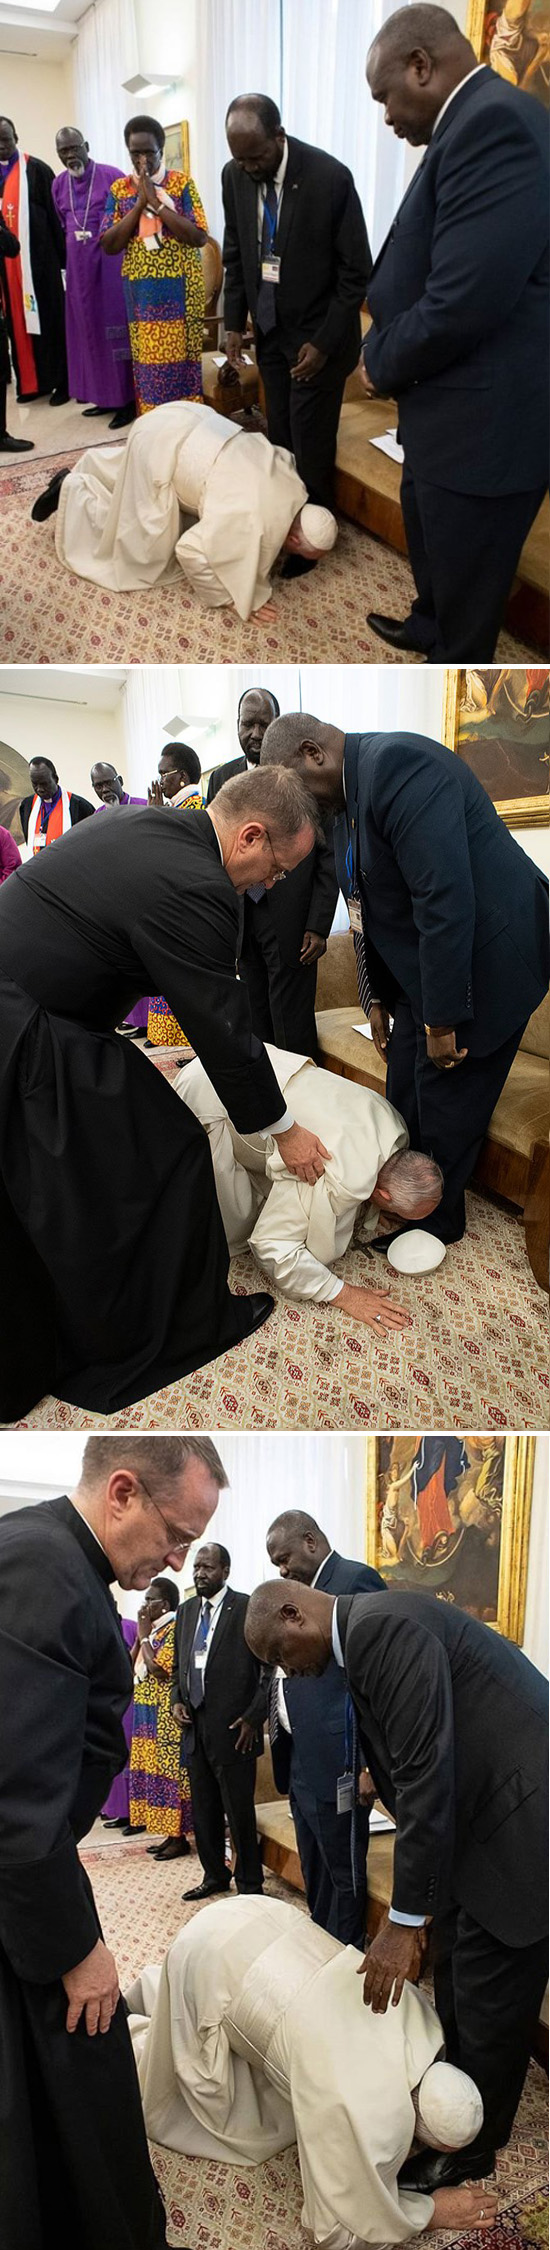 El Papa Francisco besa los pies a los políticos musulmanes.